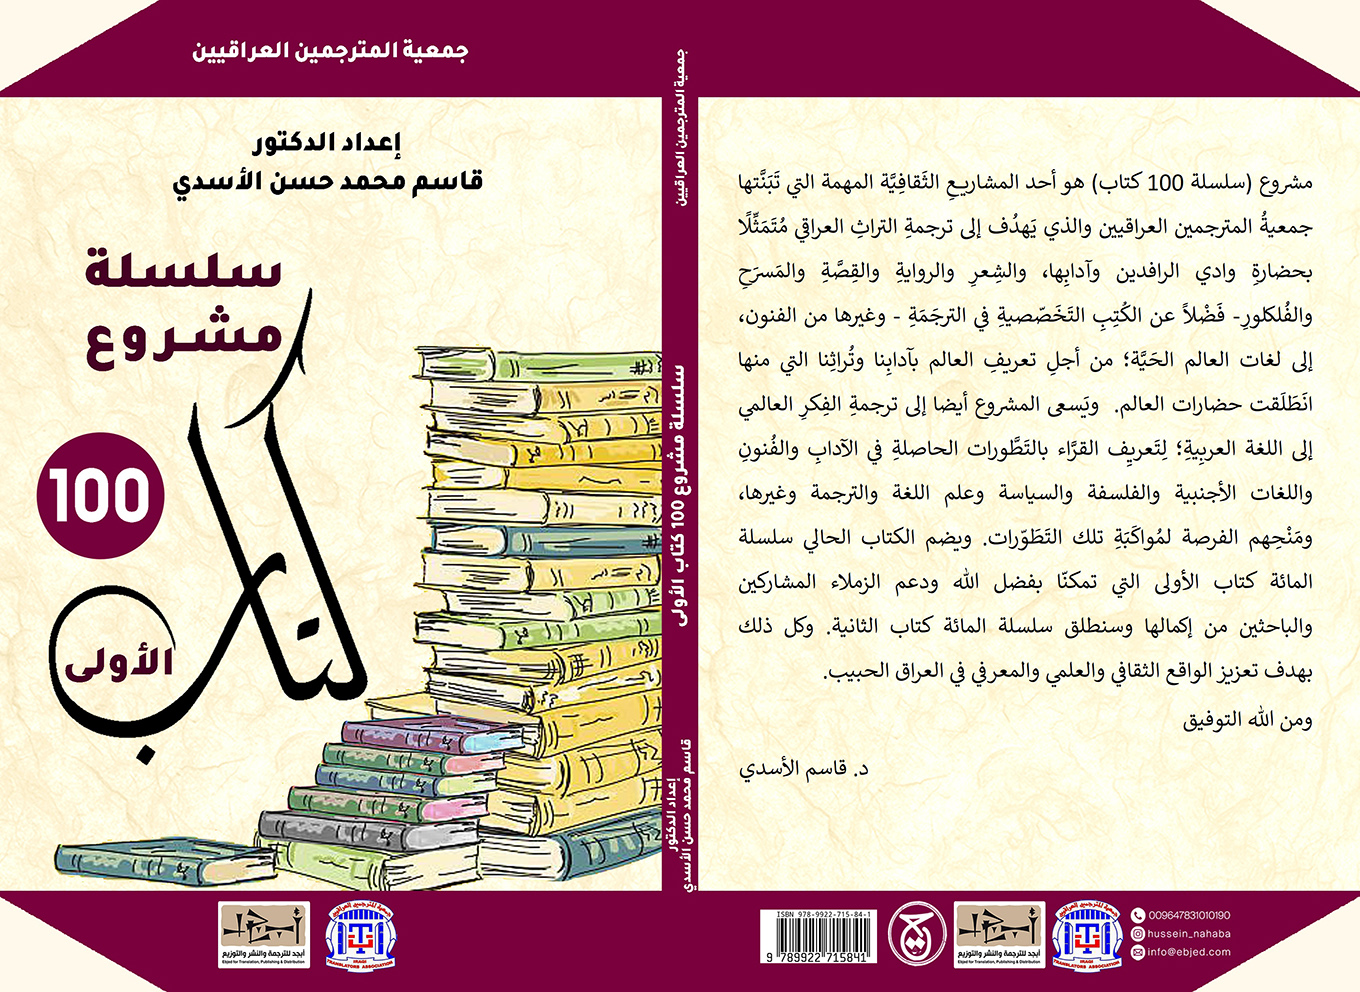 الكتاب: سلسلة مشروع ١٠٠ كتاب الأولى لجمعية المترجمين العراقيين المؤلف:  إعداد الدكتور قاسم محمد حسن الأسدي التصنيف: جمعية المترجمين العراقيين